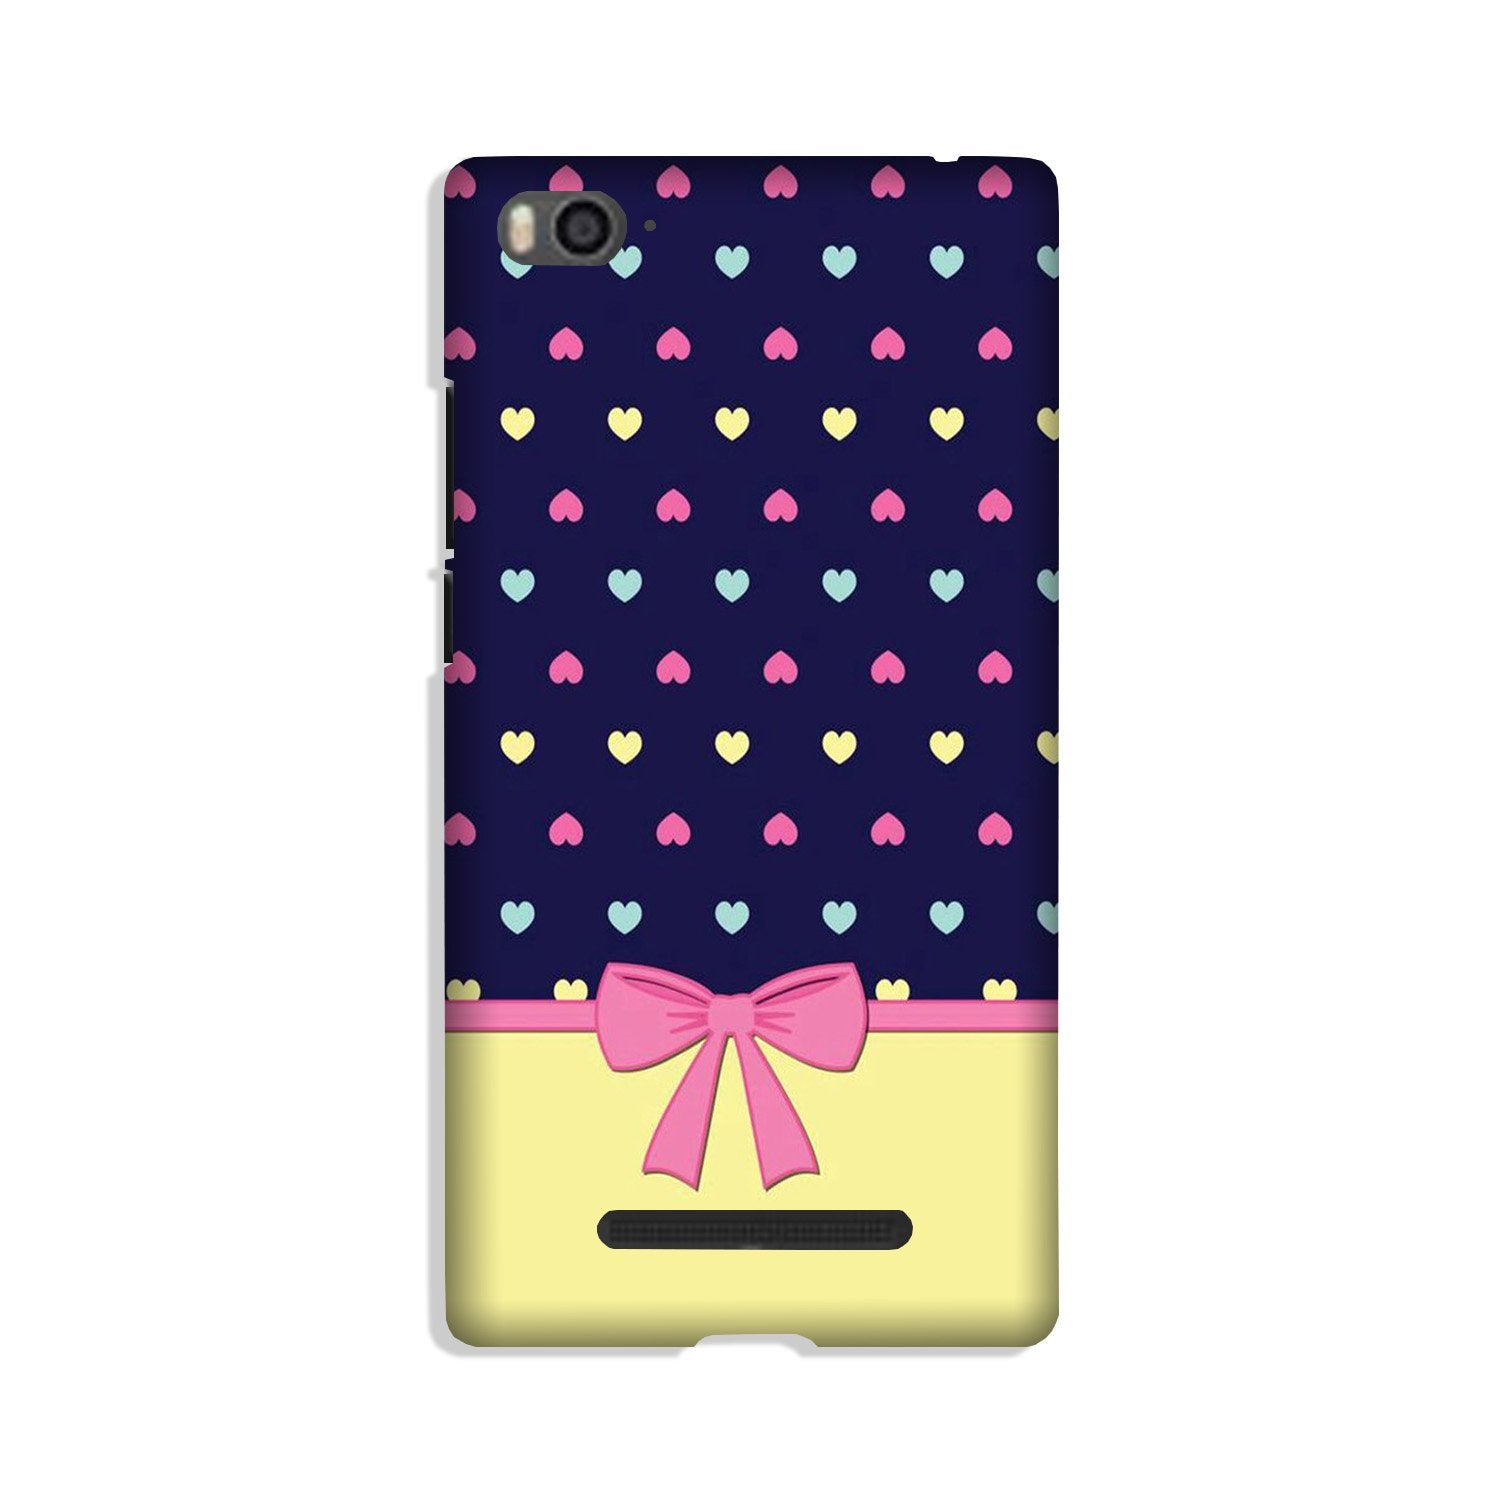 Gift Wrap5 Case for Xiaomi Mi 4i